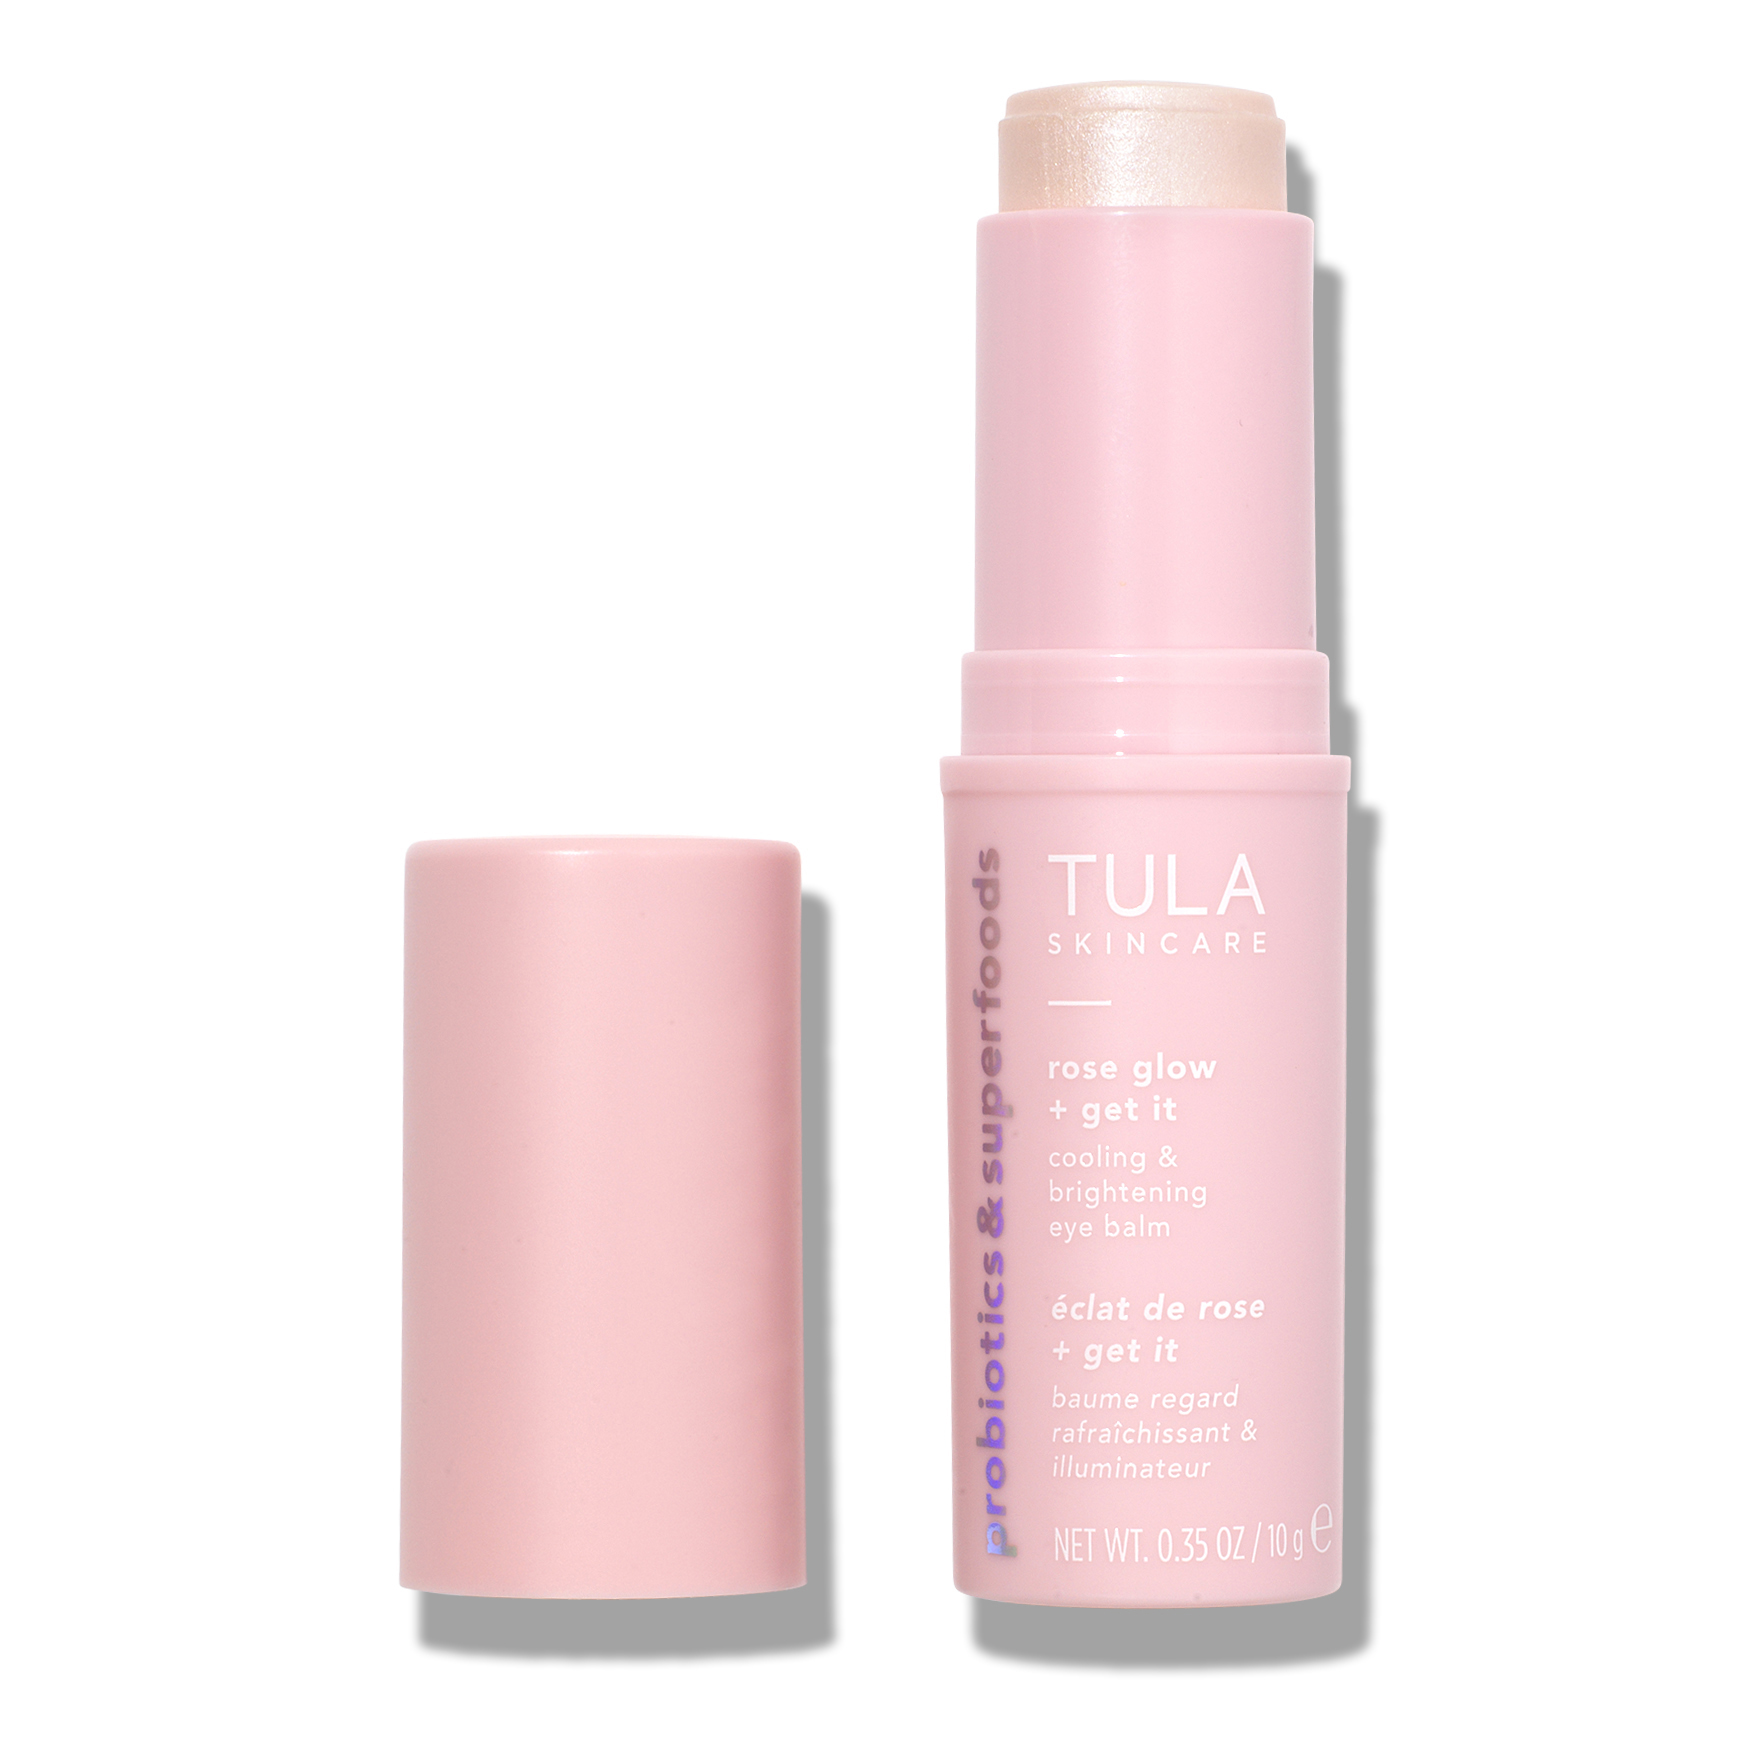 Tula Skincare Rose Glow & Get It Cooling & Brightening Eye Balm | Space NK